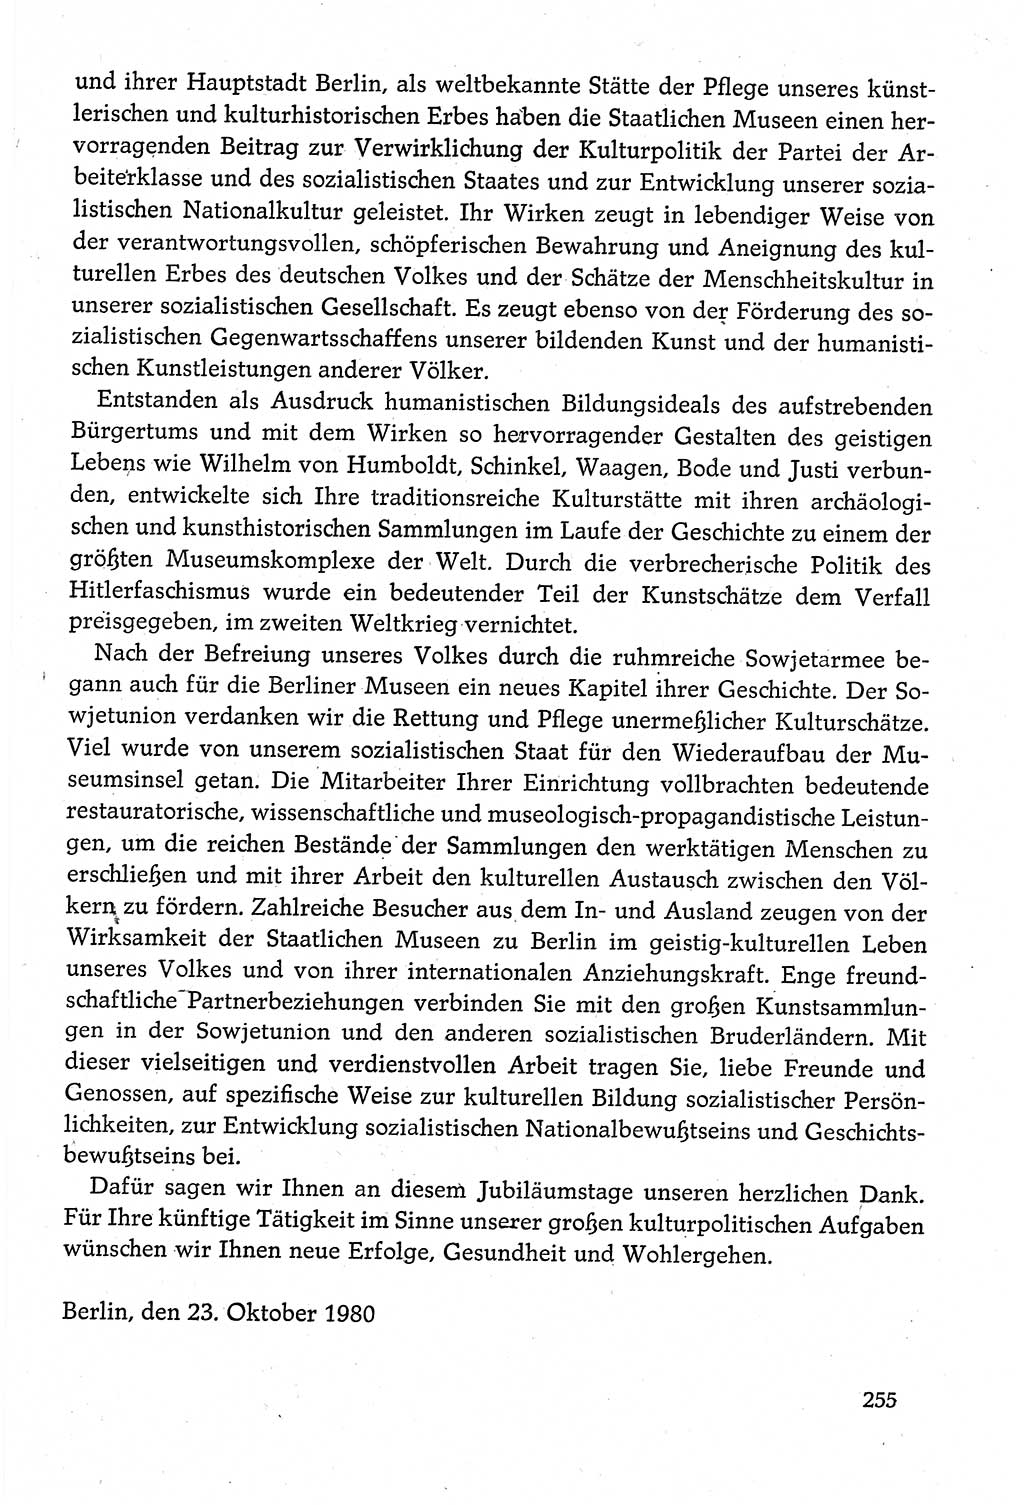 Dokumente der Sozialistischen Einheitspartei Deutschlands (SED) [Deutsche Demokratische Republik (DDR)] 1980-1981, Seite 255 (Dok. SED DDR 1980-1981, S. 255)